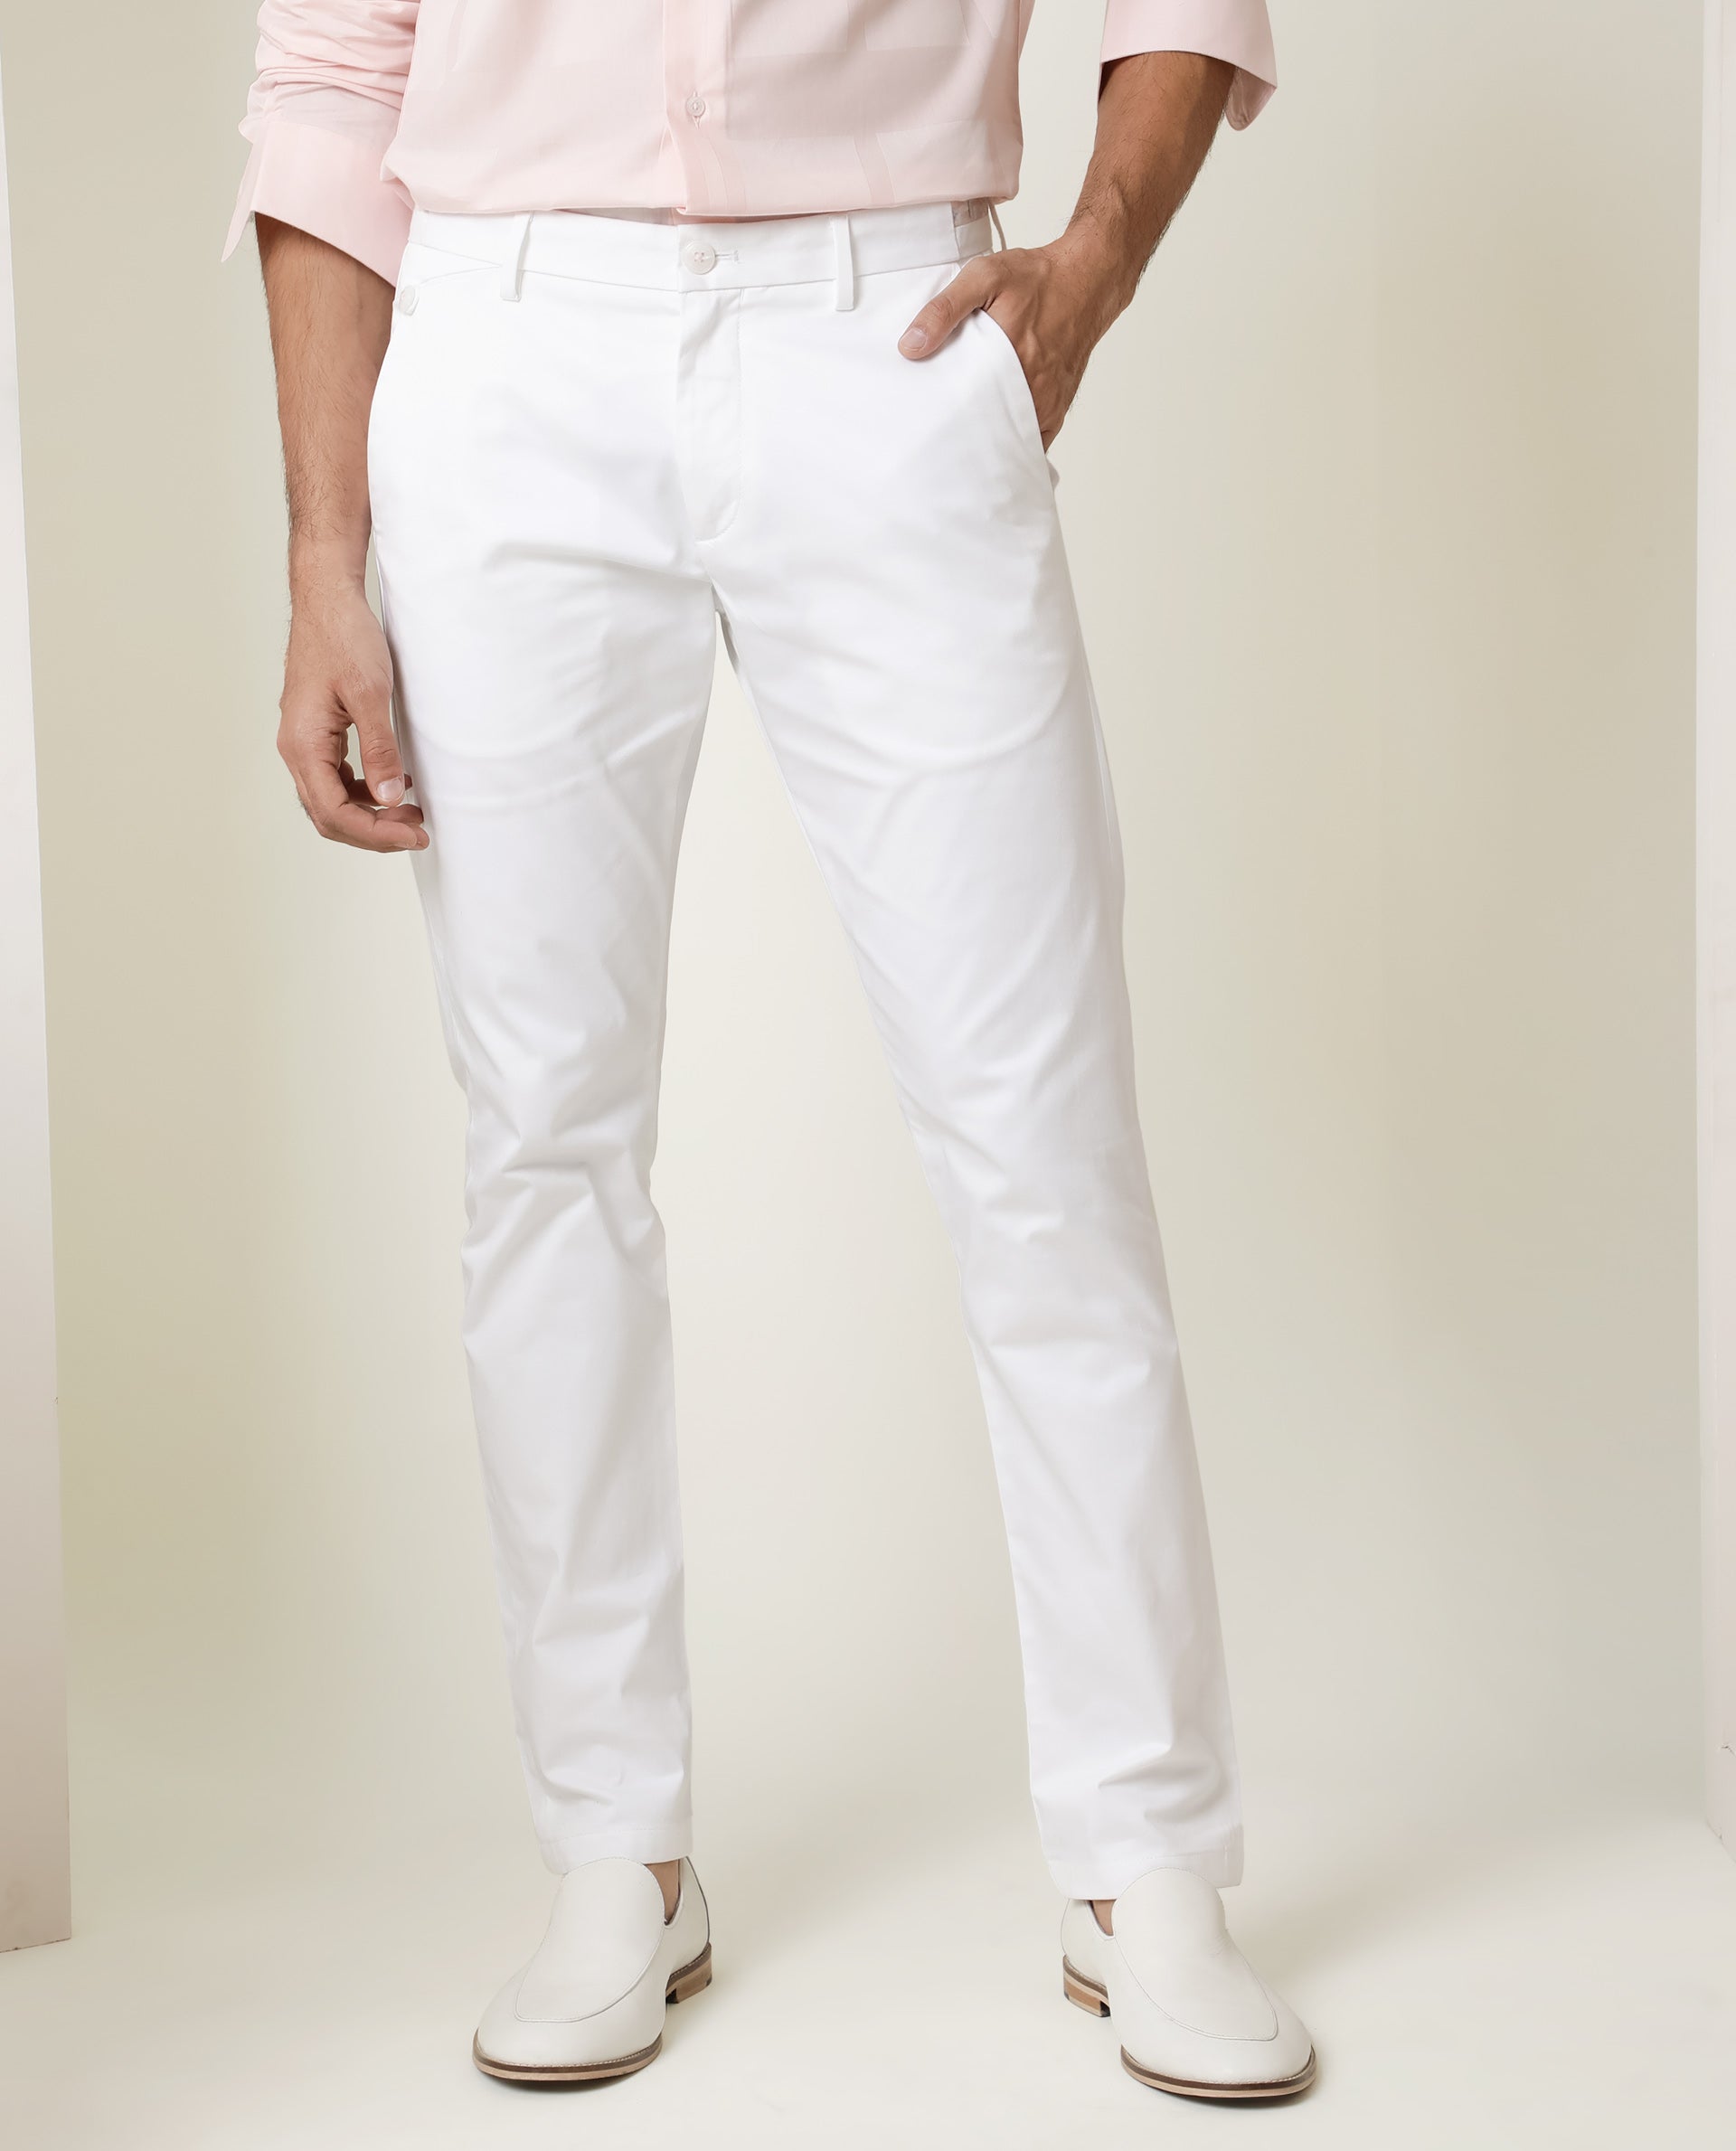 Bright White PlainSolid Premium Cotton Pant For Men